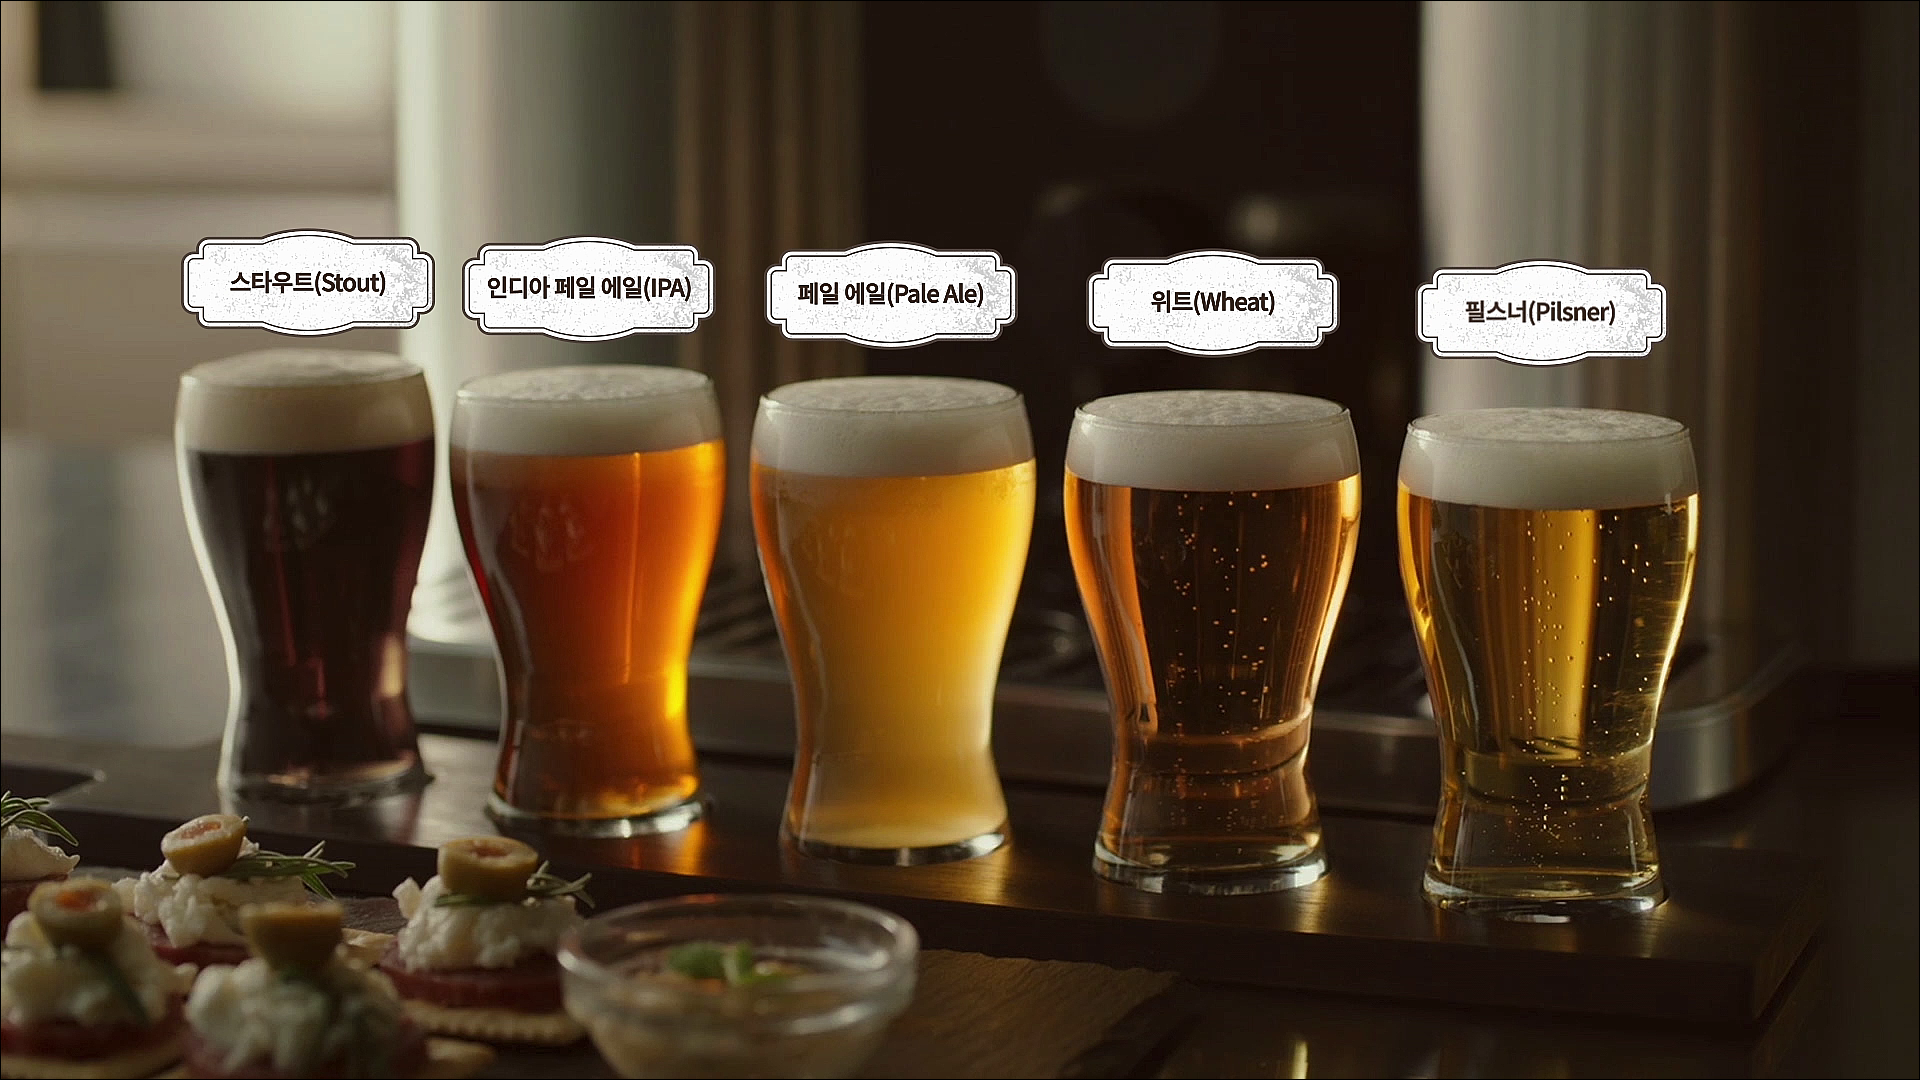 LG 홈브루가 만들 수 있는 5가지 맥주 (스타우트, 인디아 페일 에일, 페일 에일, 위트, 필스너)